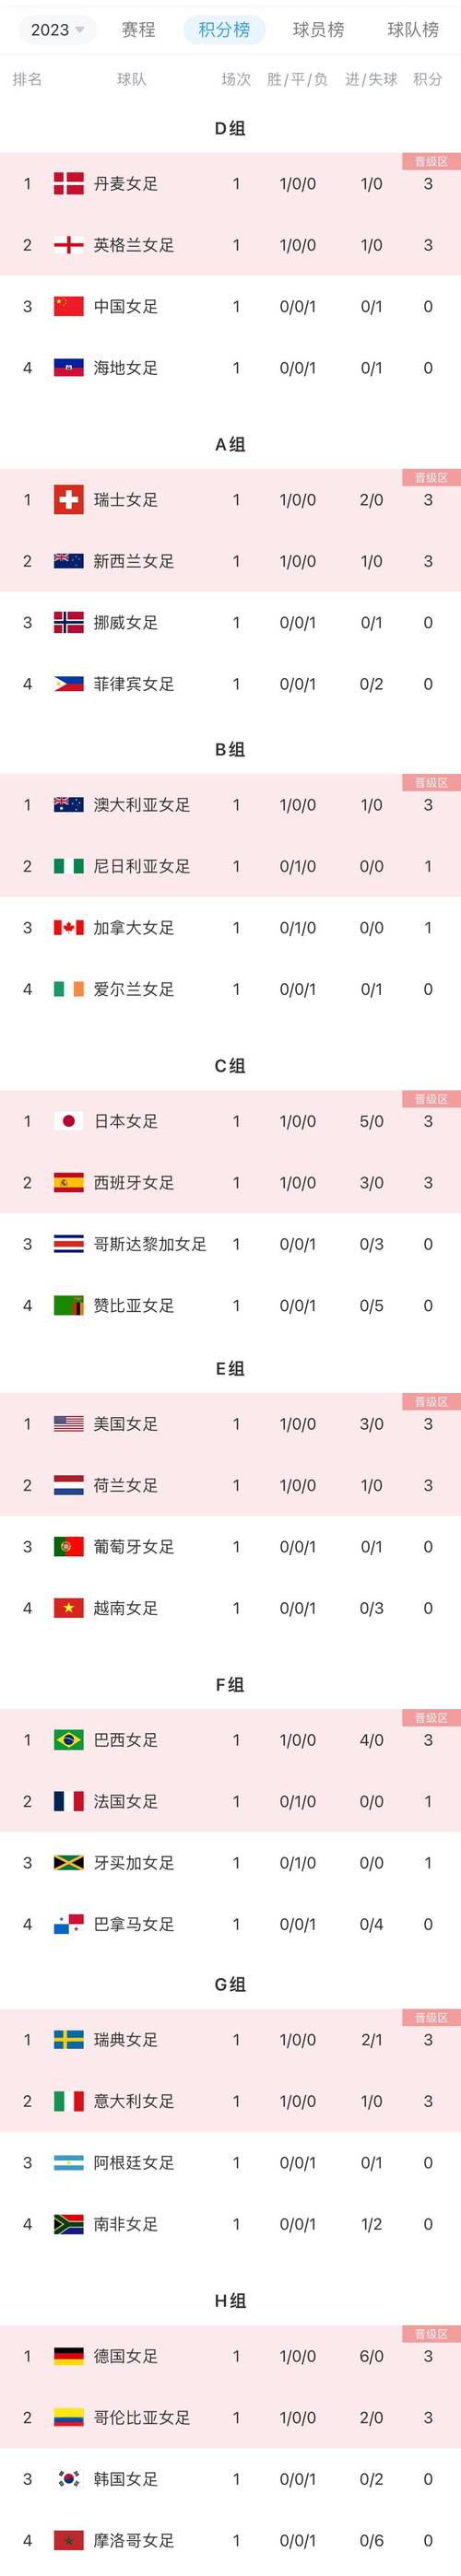 世界杯预选赛中国积分排名